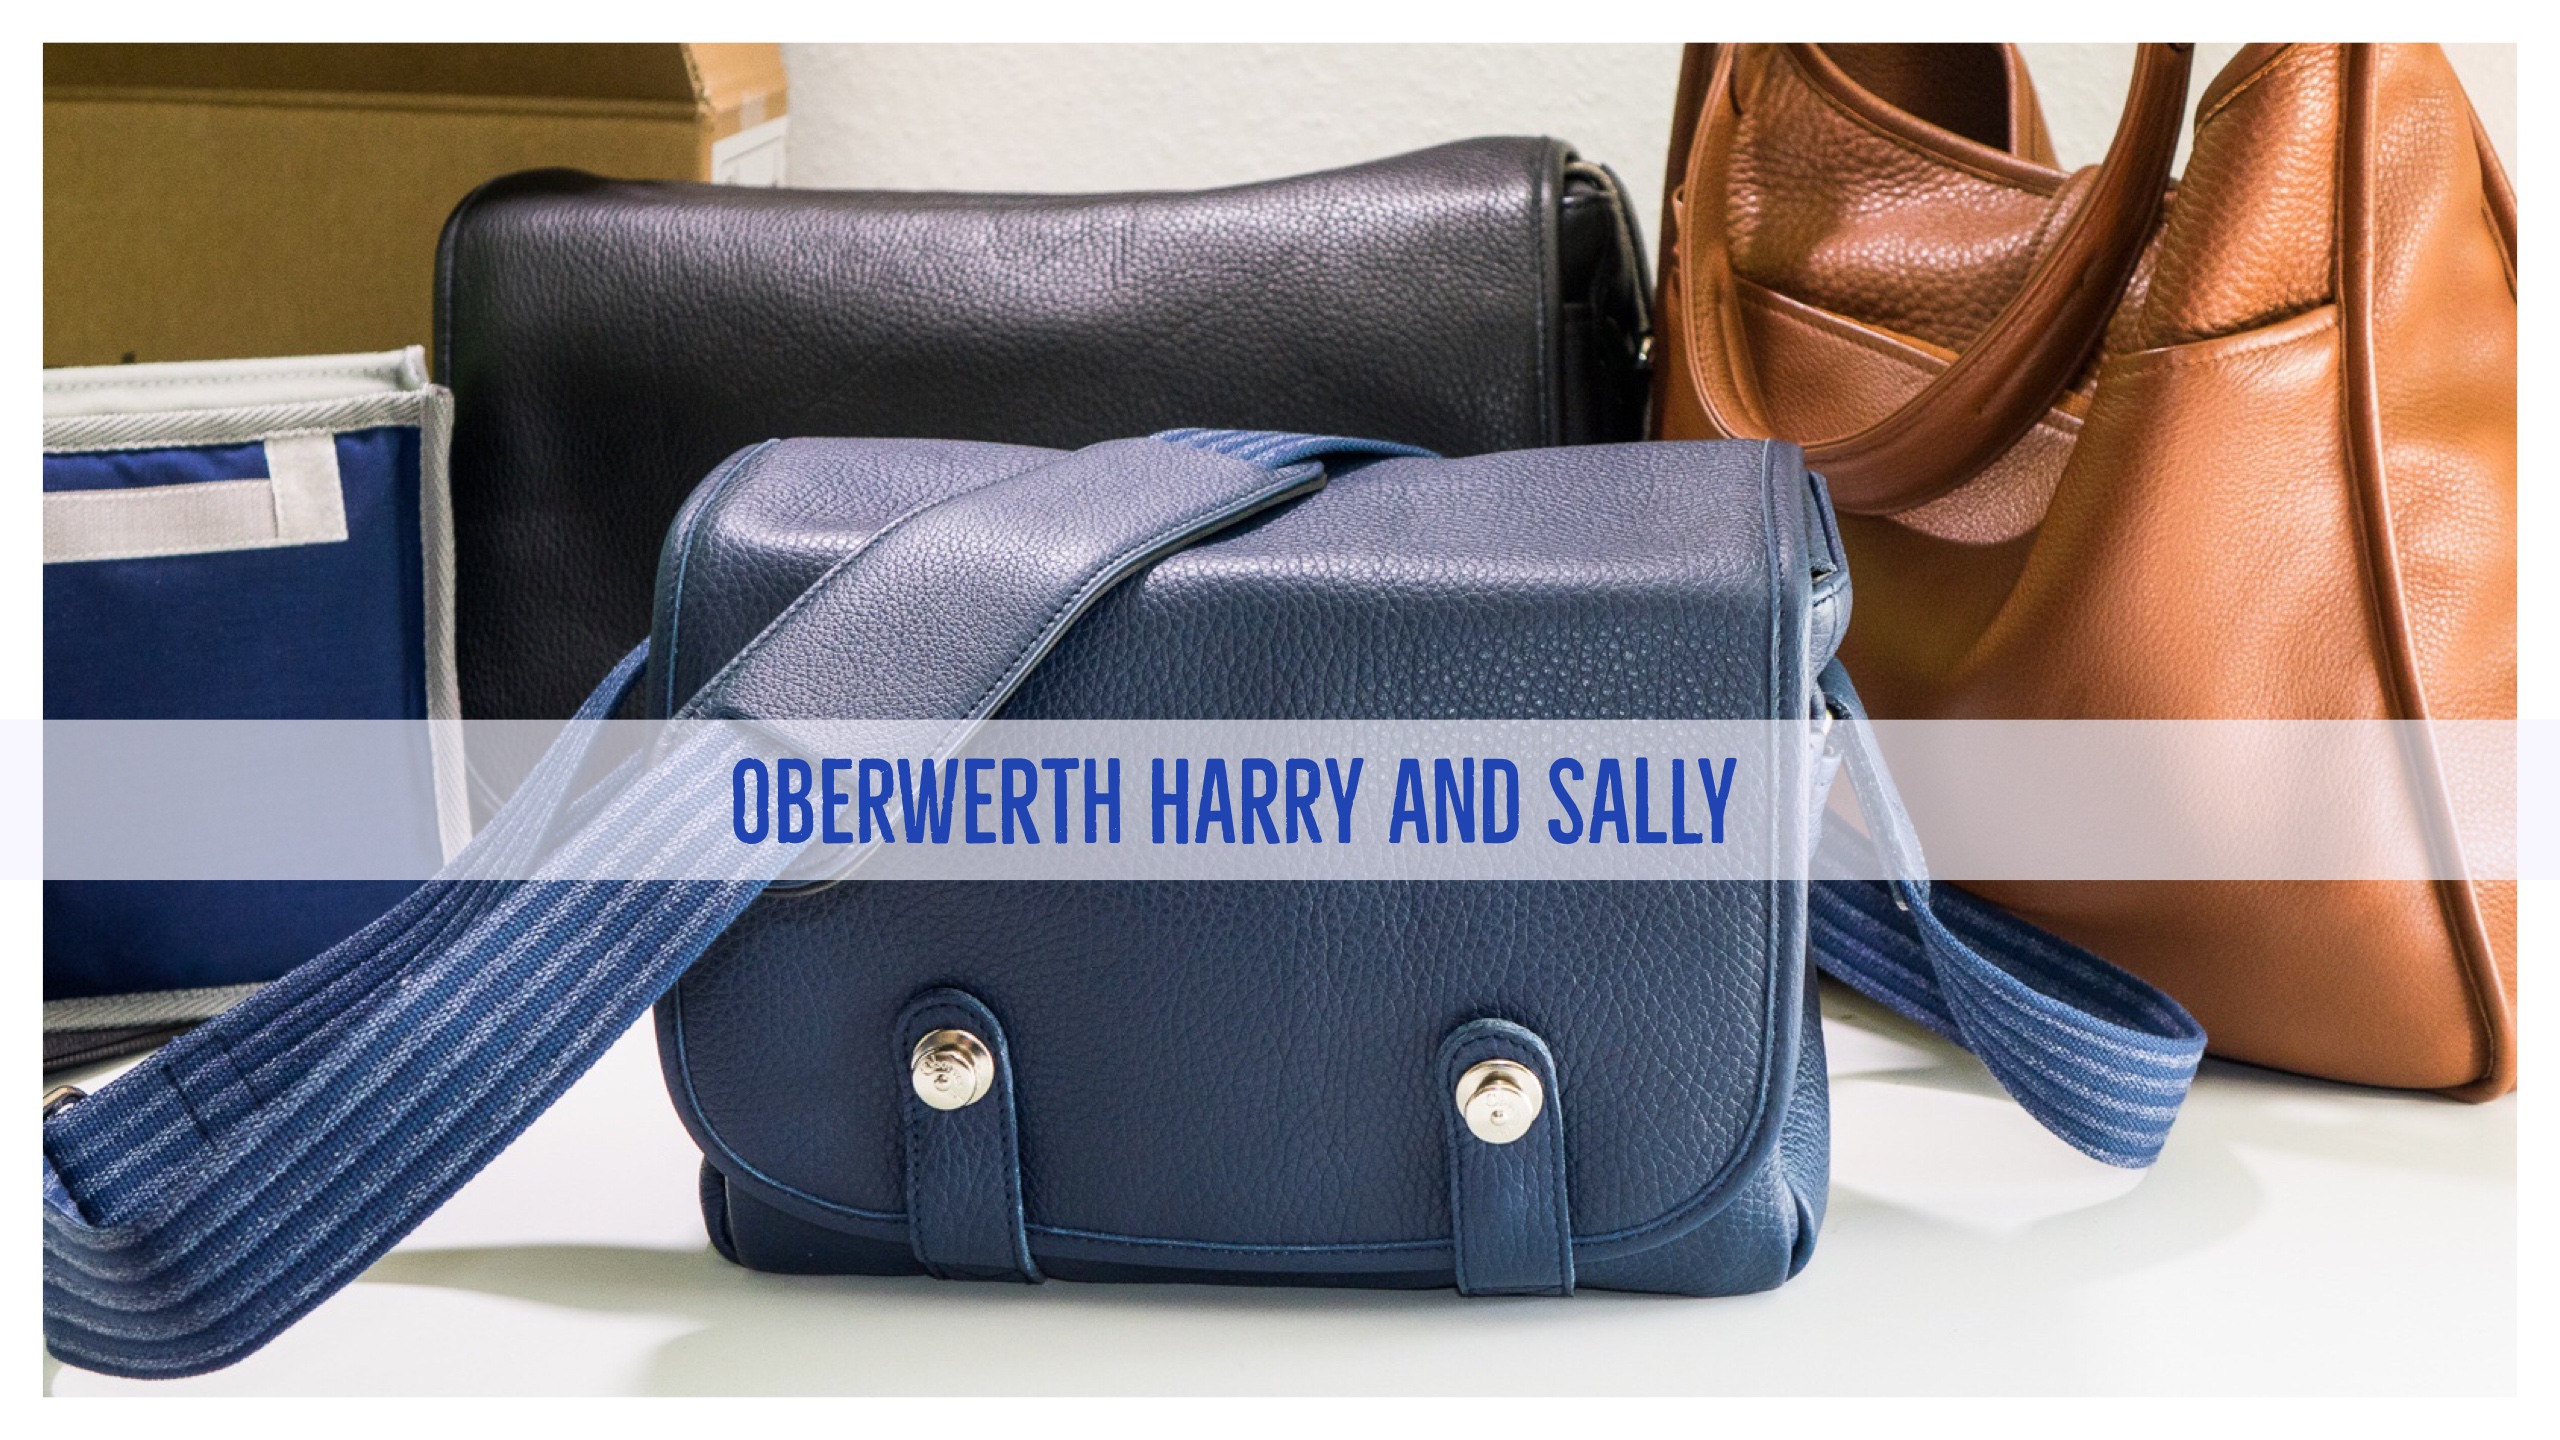 Eine erste Betrachtung der enzianblauen Harry & Sally von Oberwerth